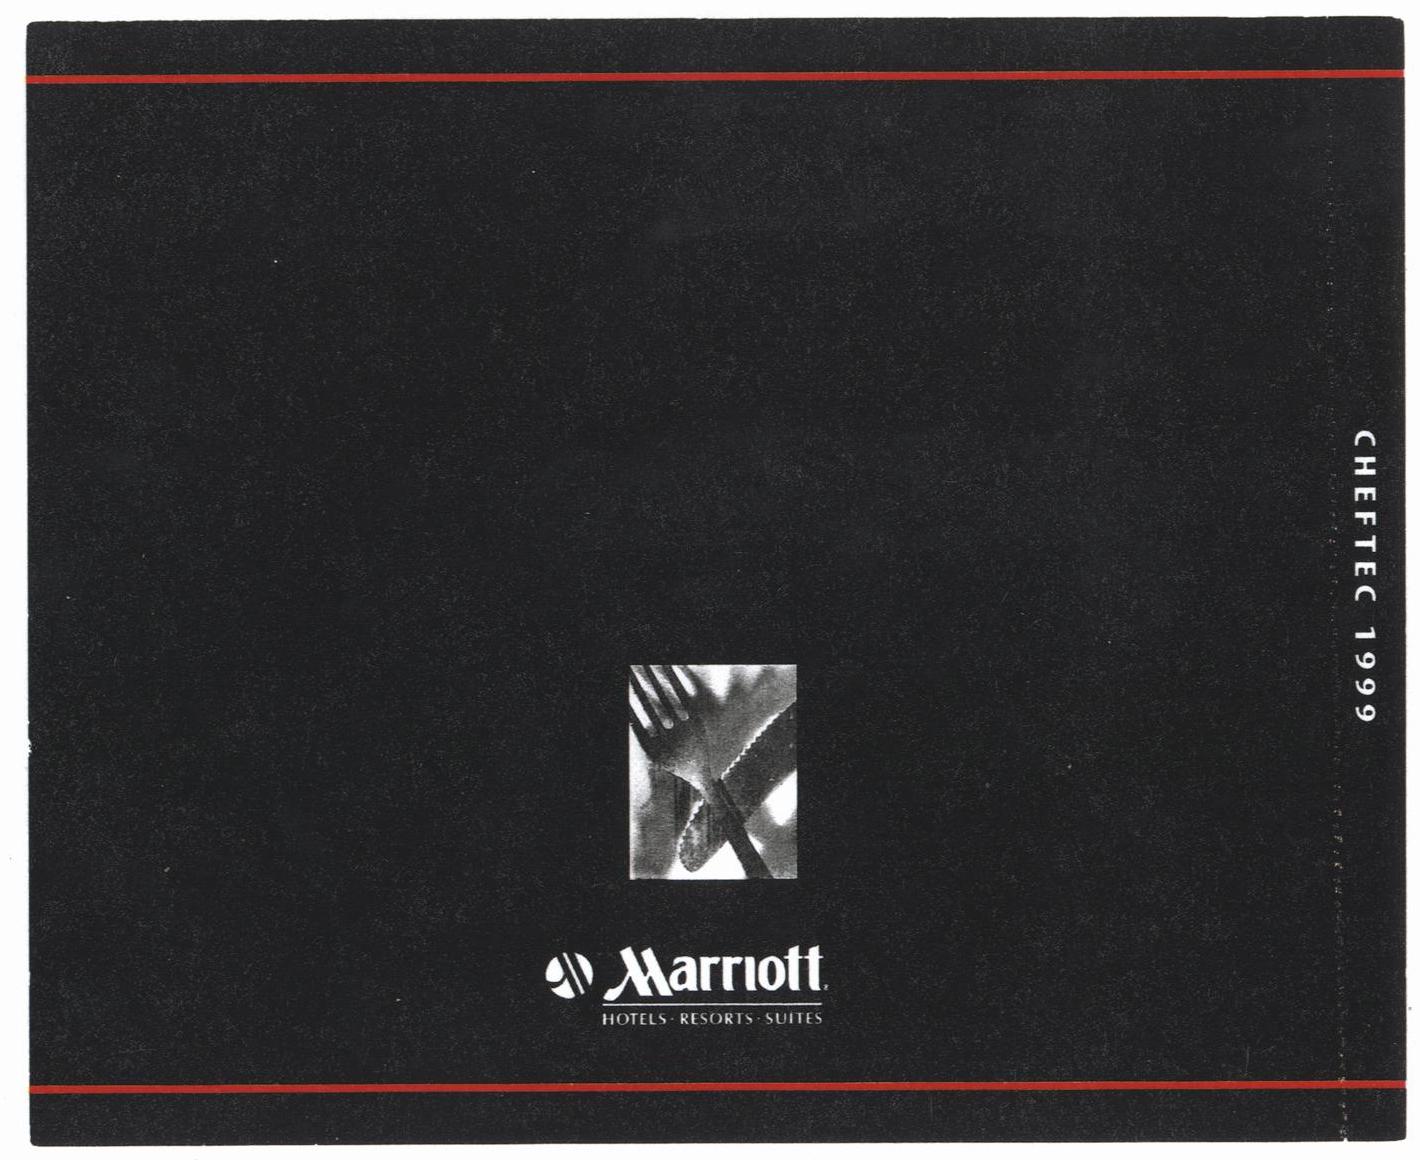 Marriott CD Tray Insert - Back